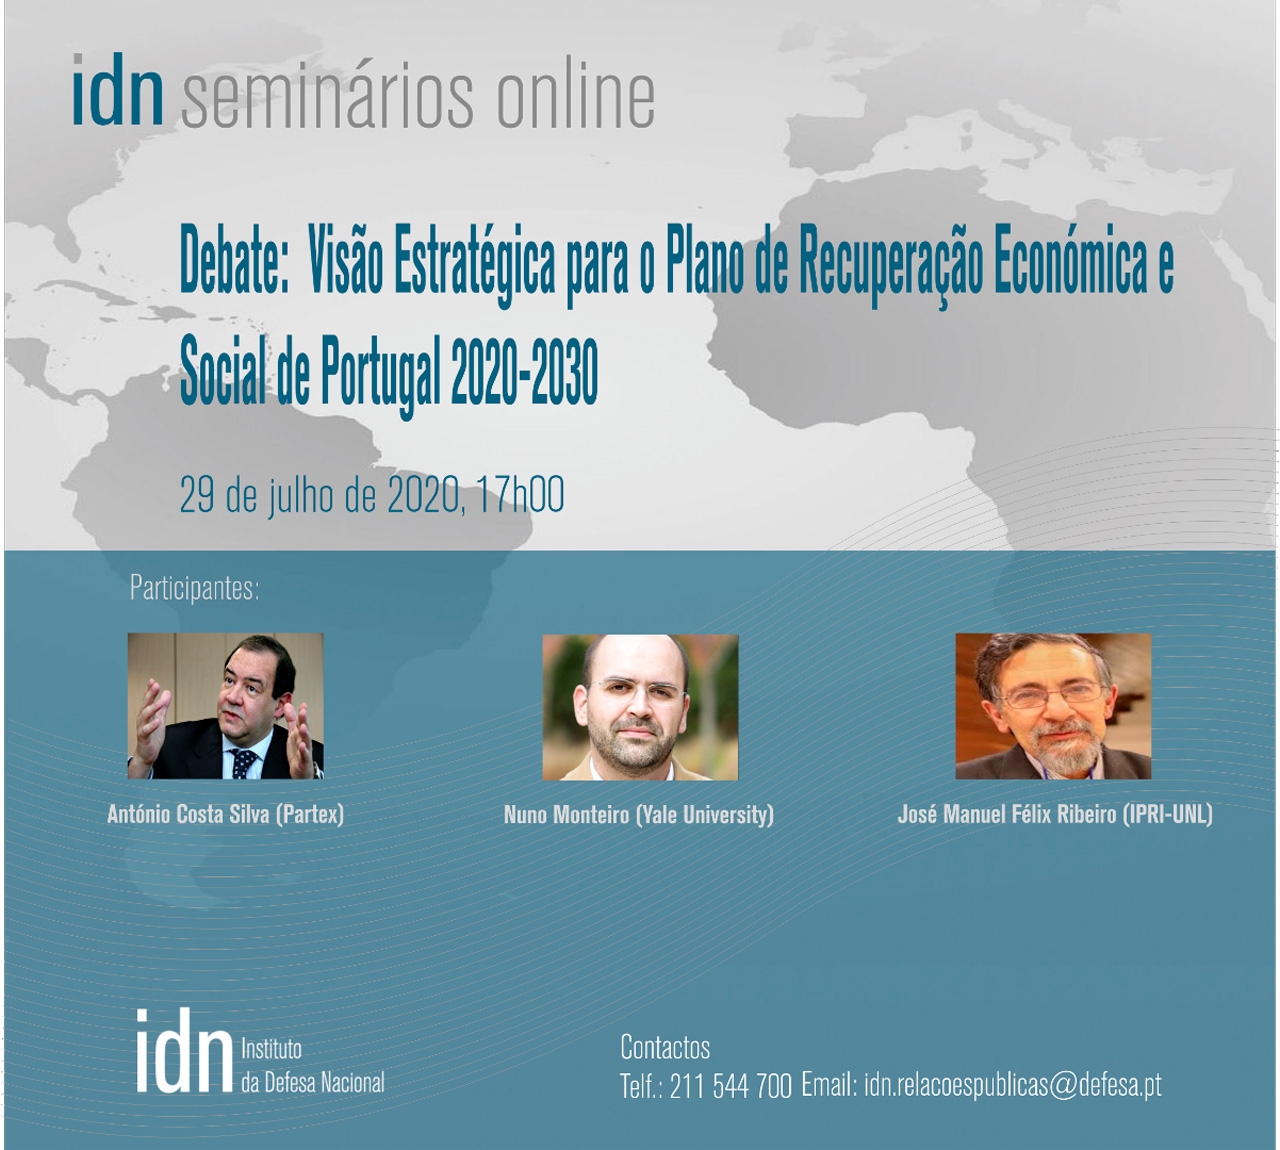 IDN Webinar - Debate "Visão Estratégica para o Plano de Recuperação Económica e Social de Portugal, 2020-2030"